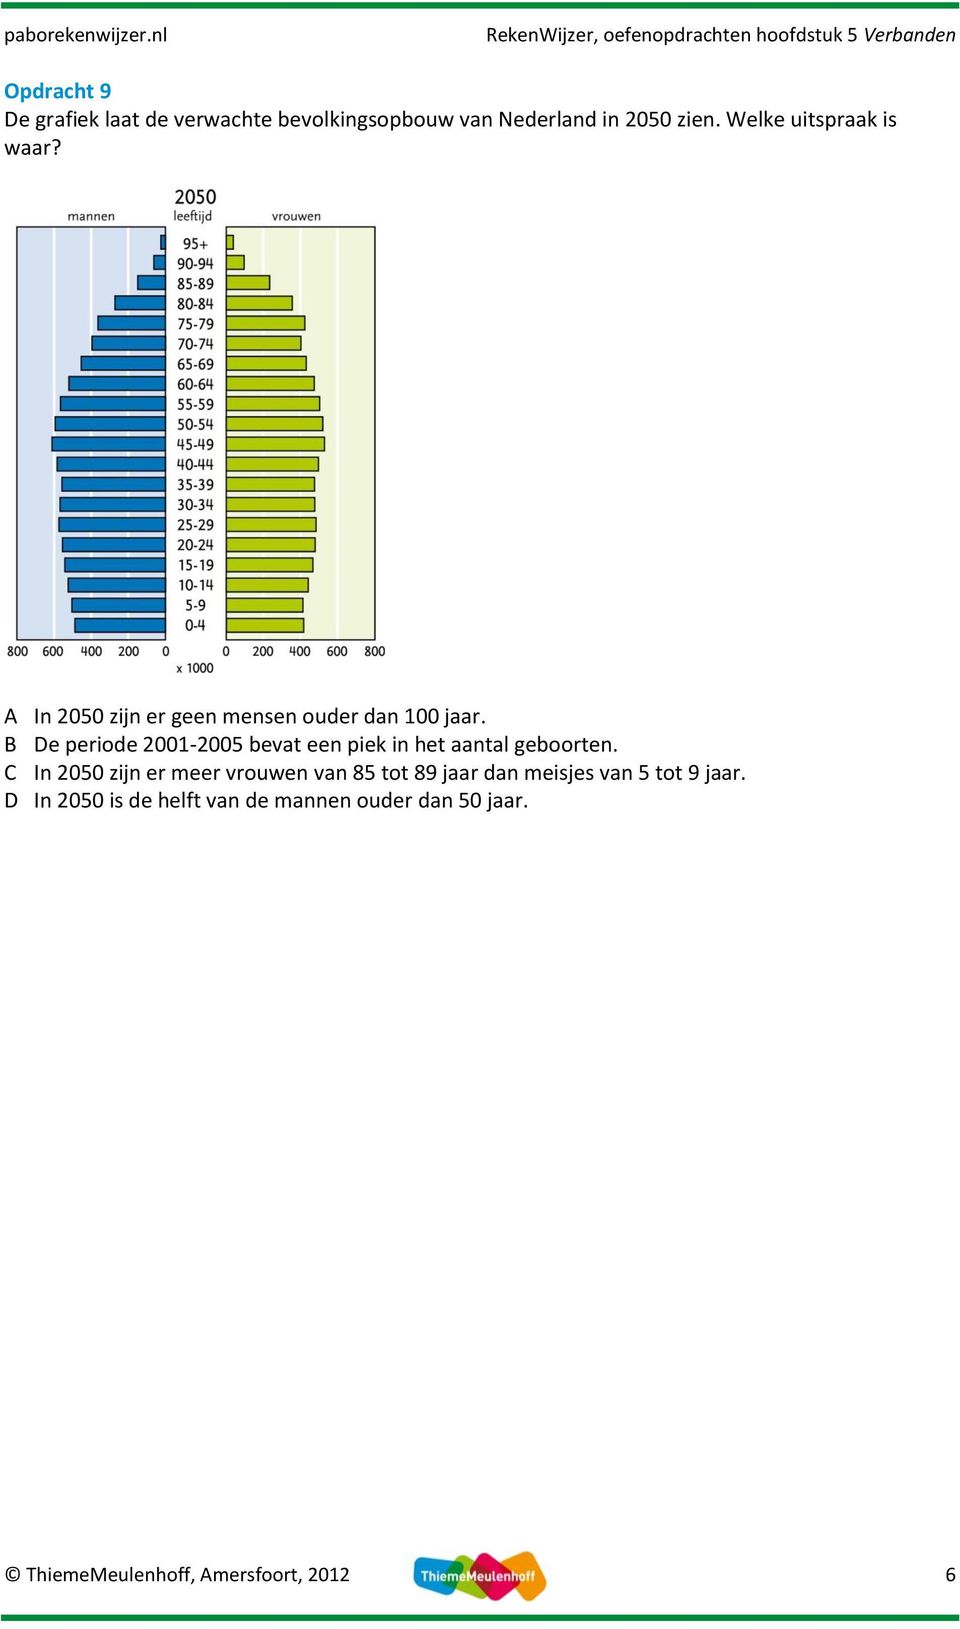 B De periode 2001-2005 bevat een piek in het aantal geboorten.